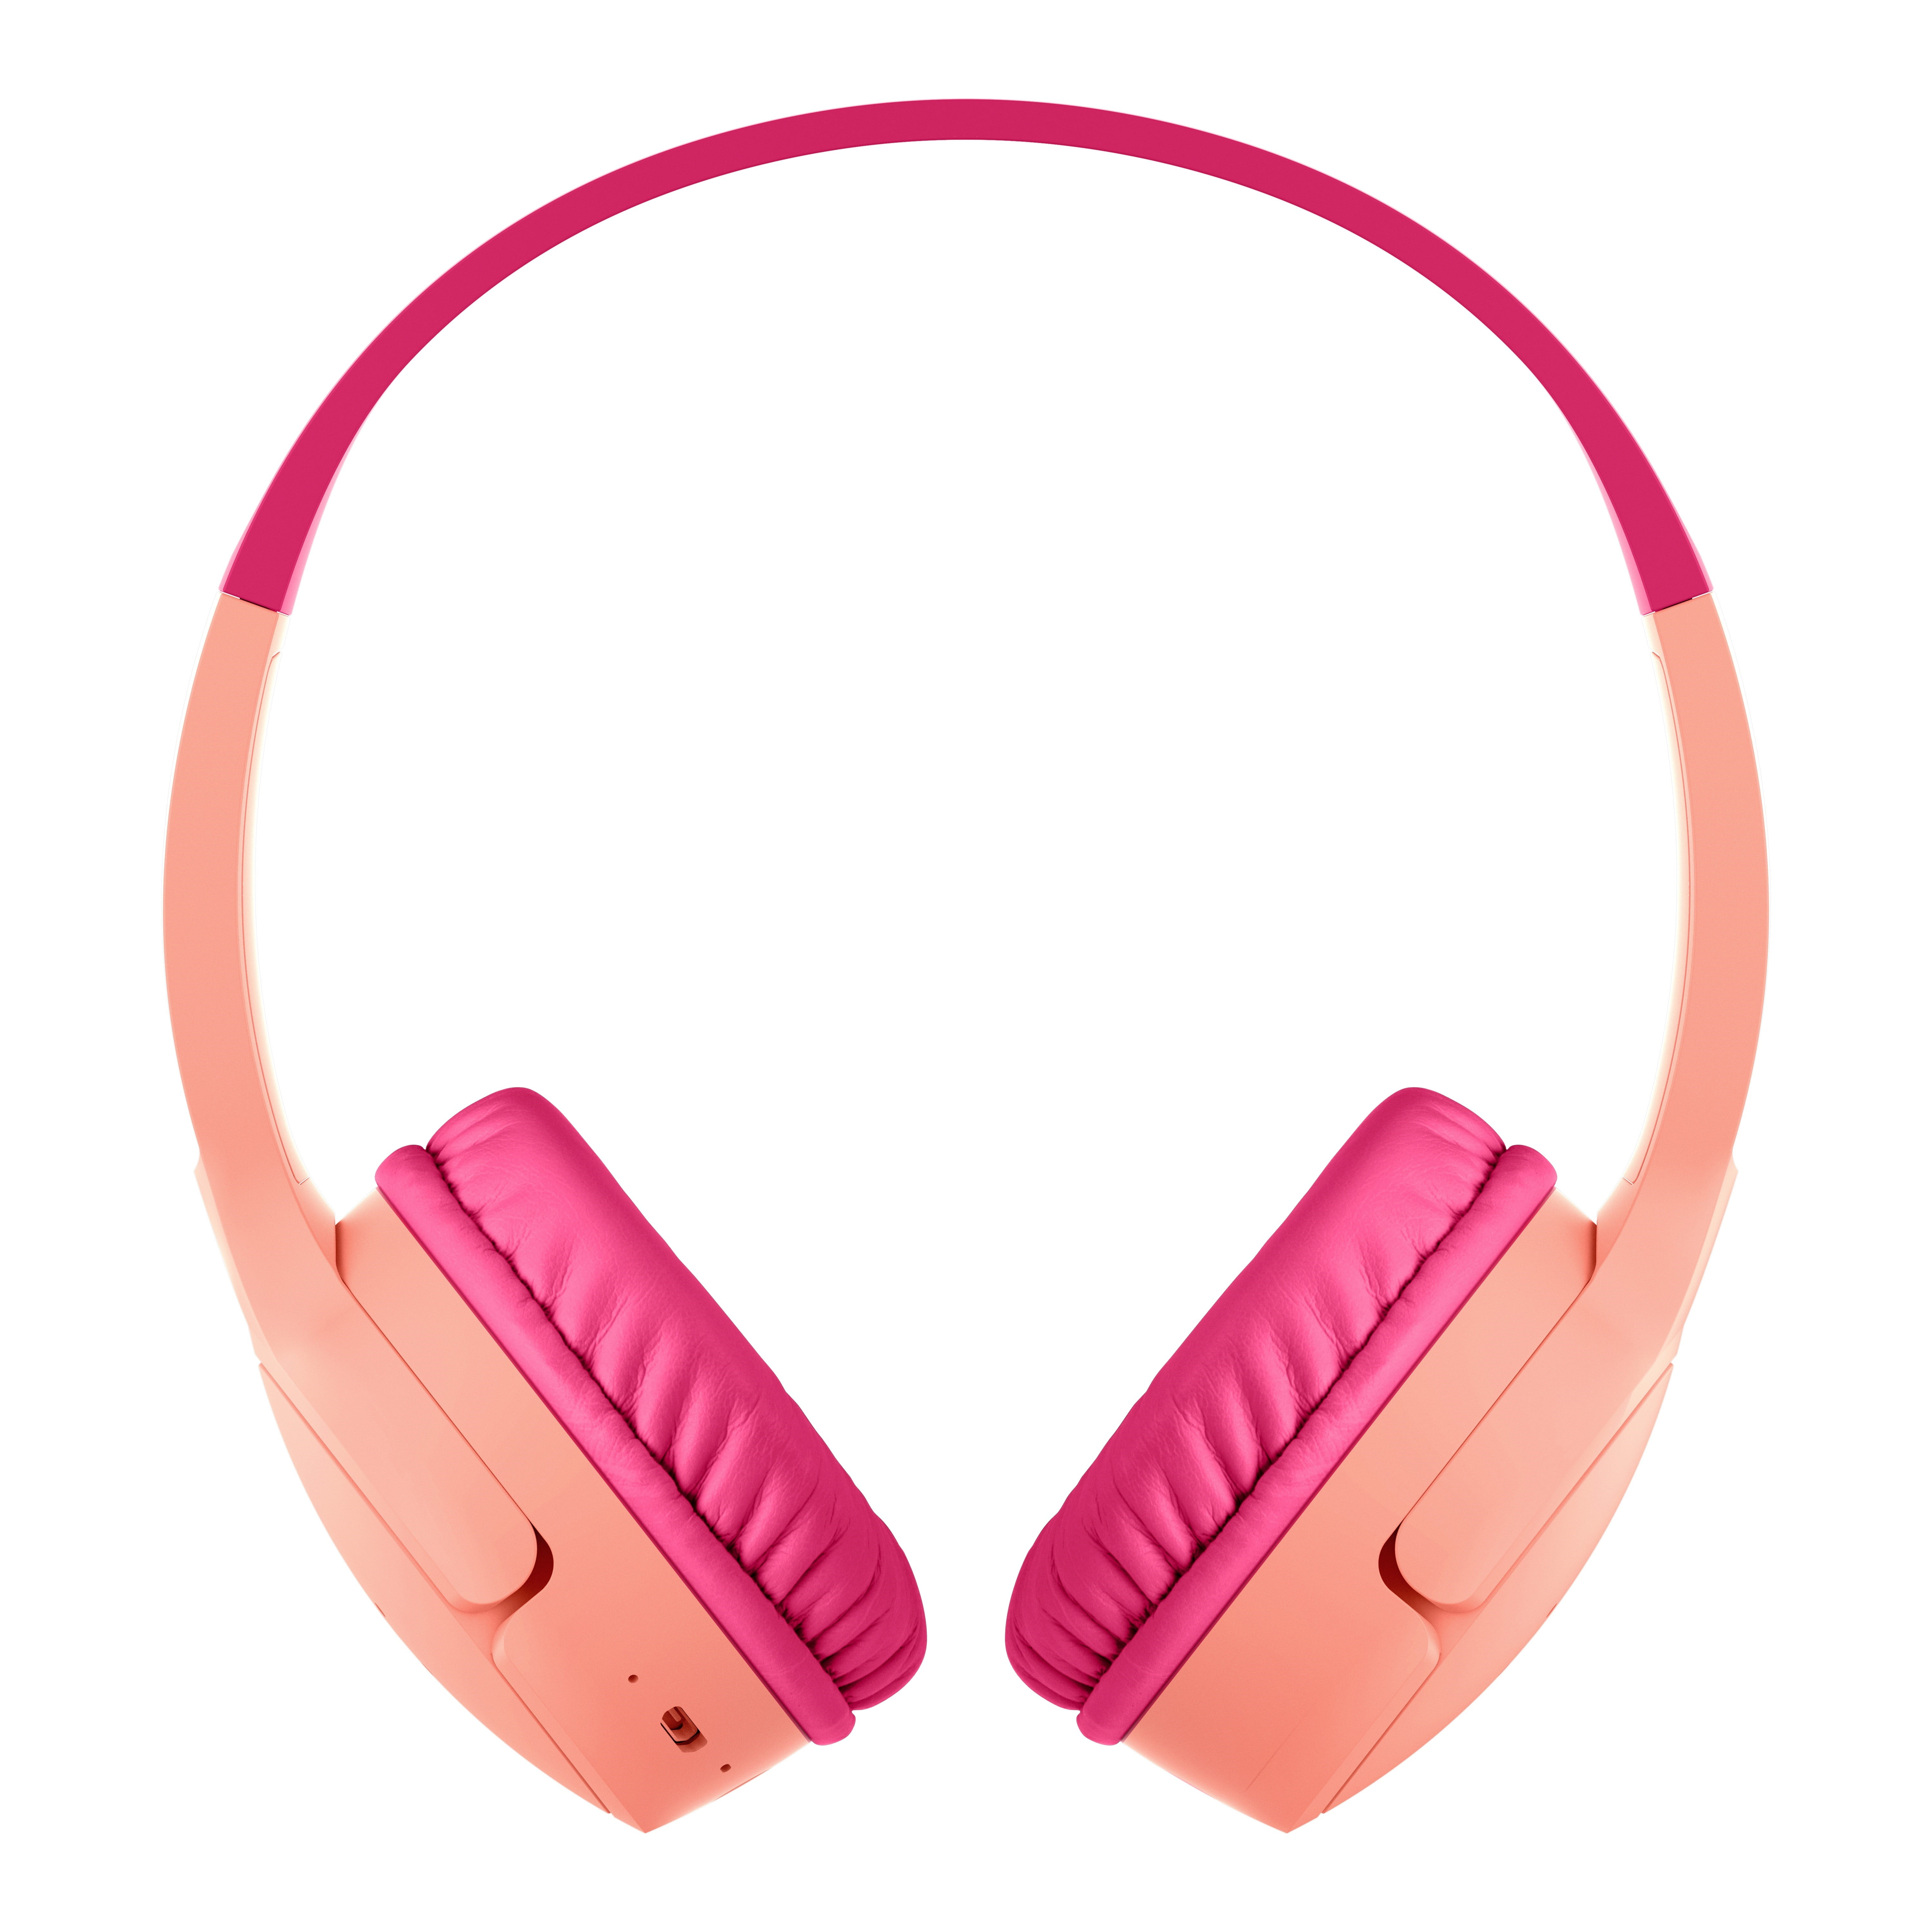 Headphones for Belkin Mini Bluetooth Blue SOUNDFORM Wireless On-Ear Kids,